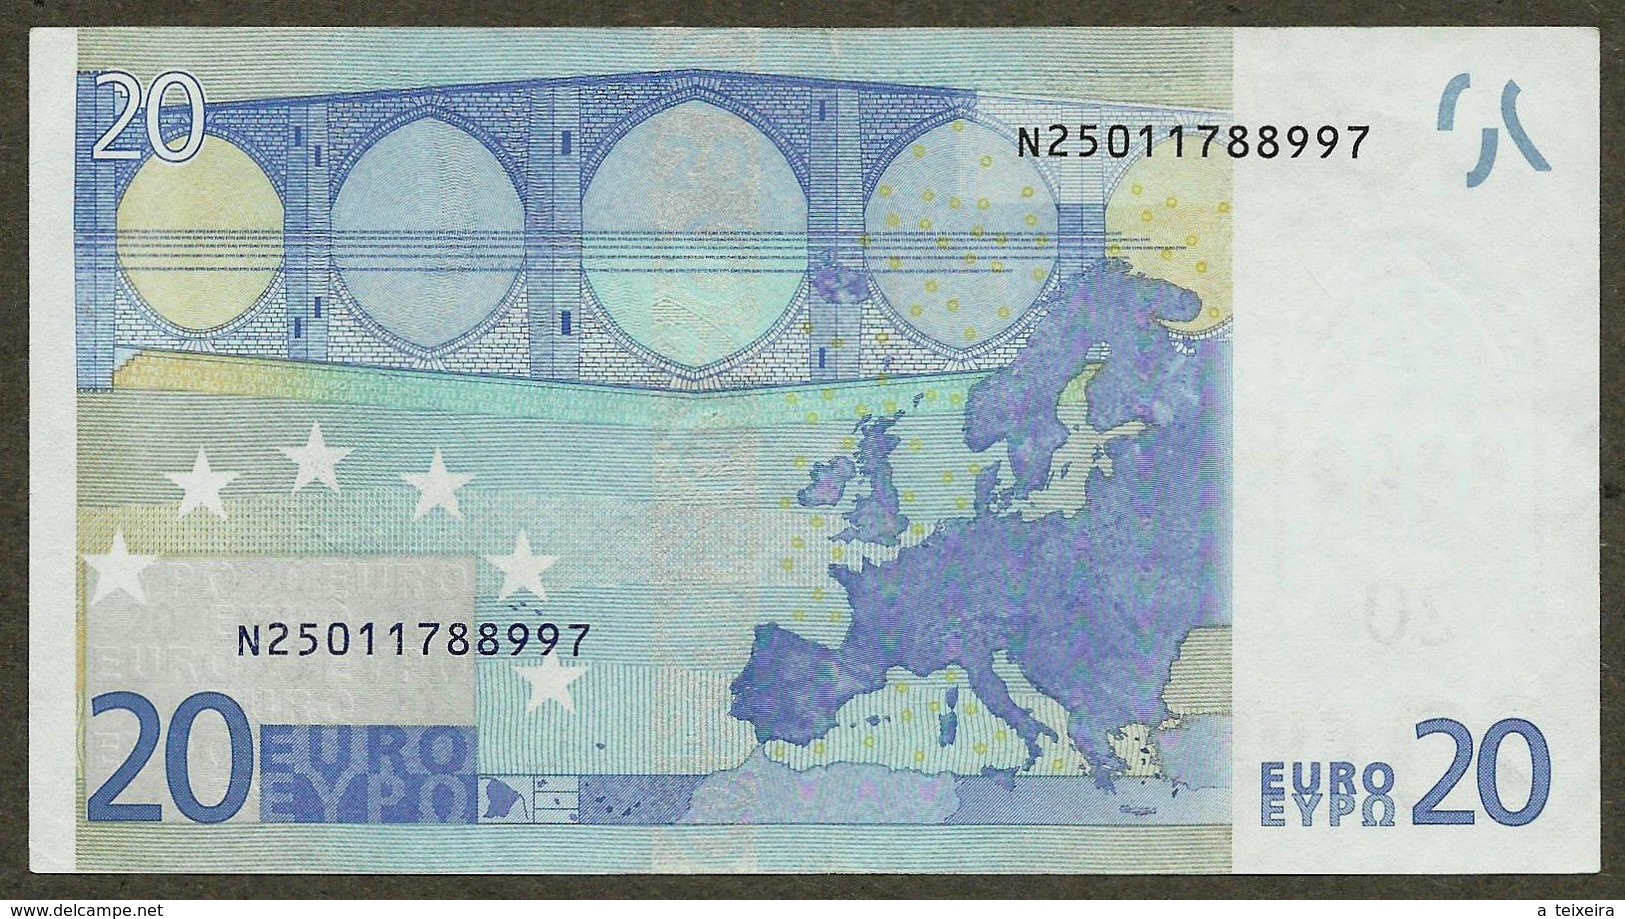 Autriche - N - 20 Euro - F001 - N25011788997 - Duisenberg - Circulated - 20 Euro